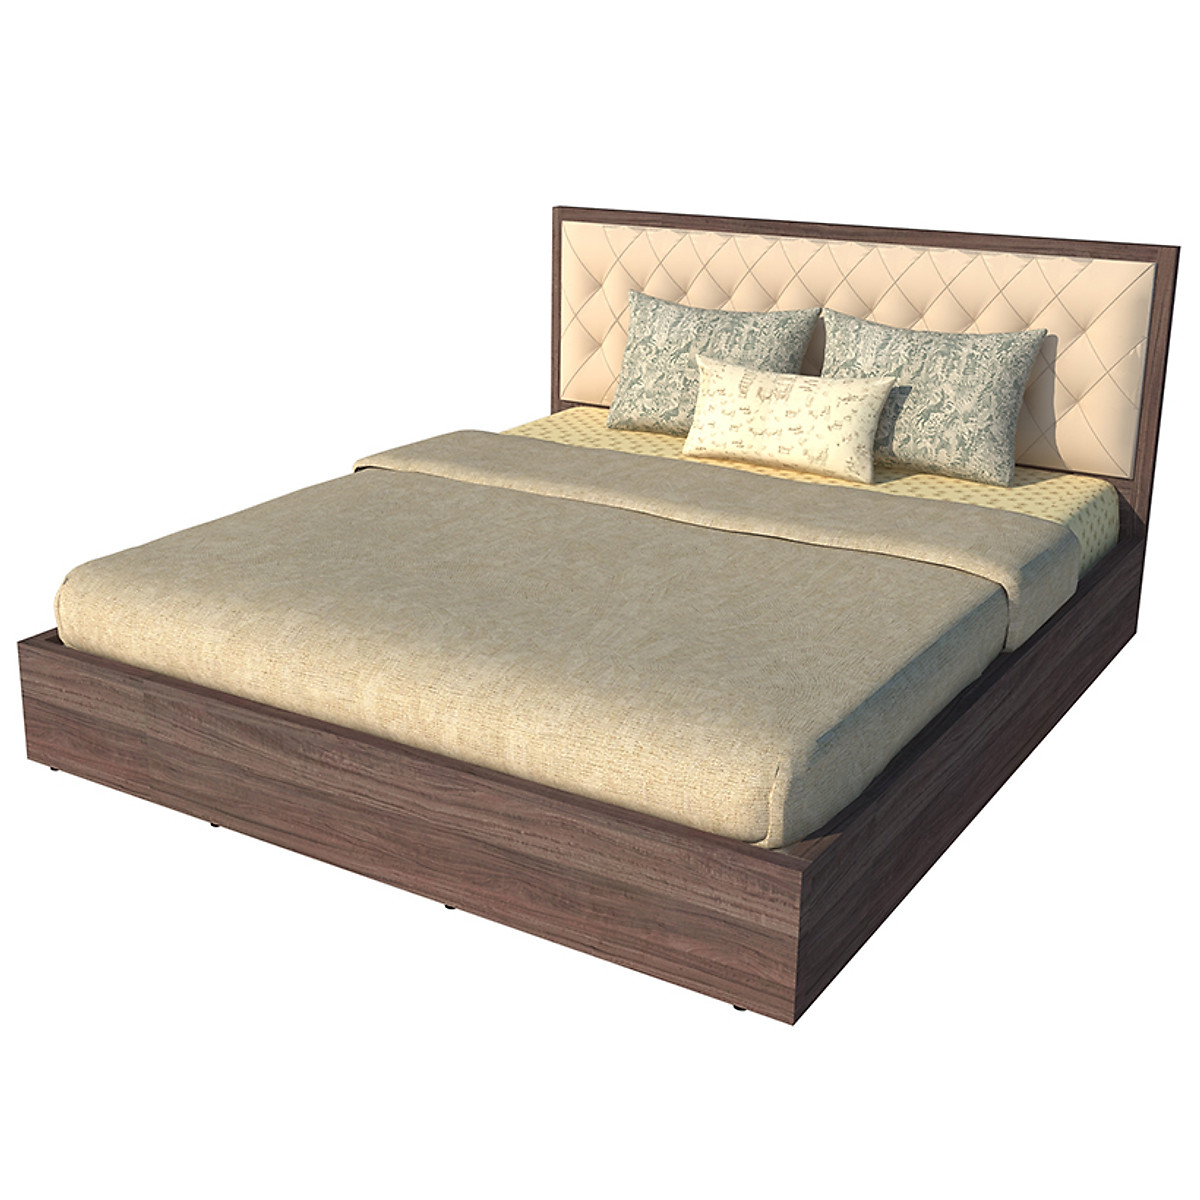 Giường ngủ cao cấp Tundo màu nâu 160cm x 200cm